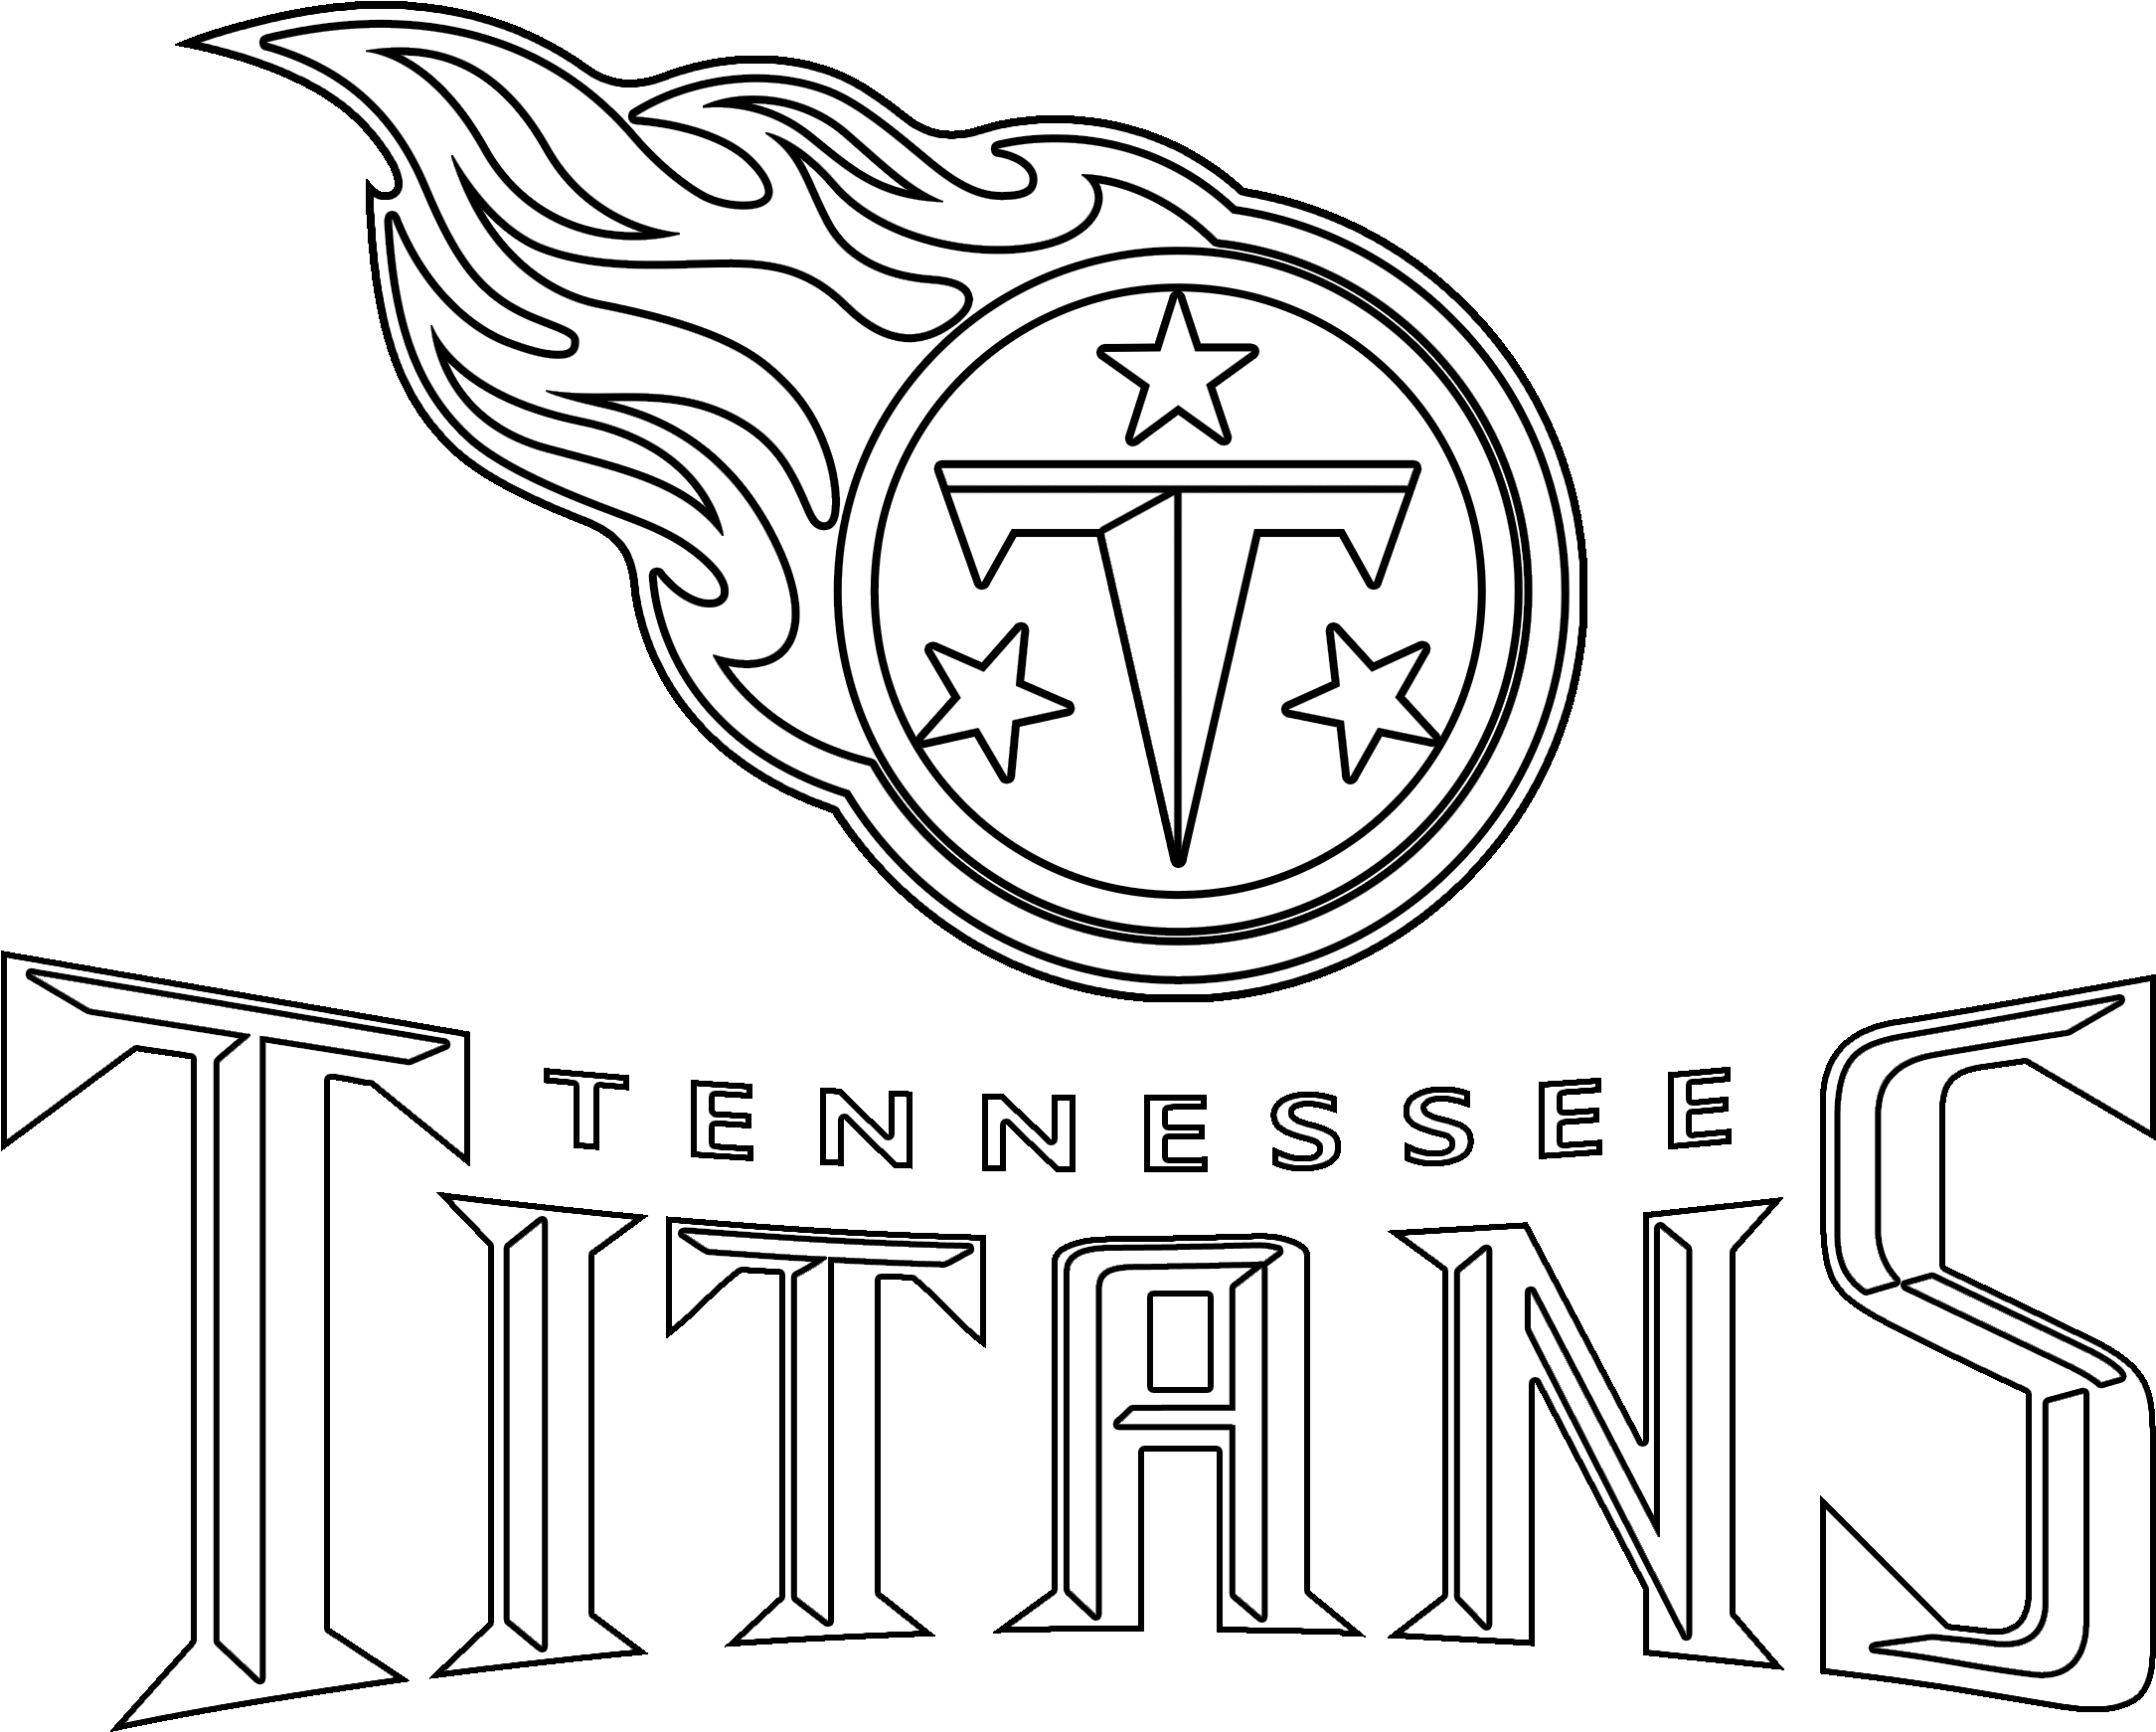 تينيسي جبابرة logo PNG صورة شفافة